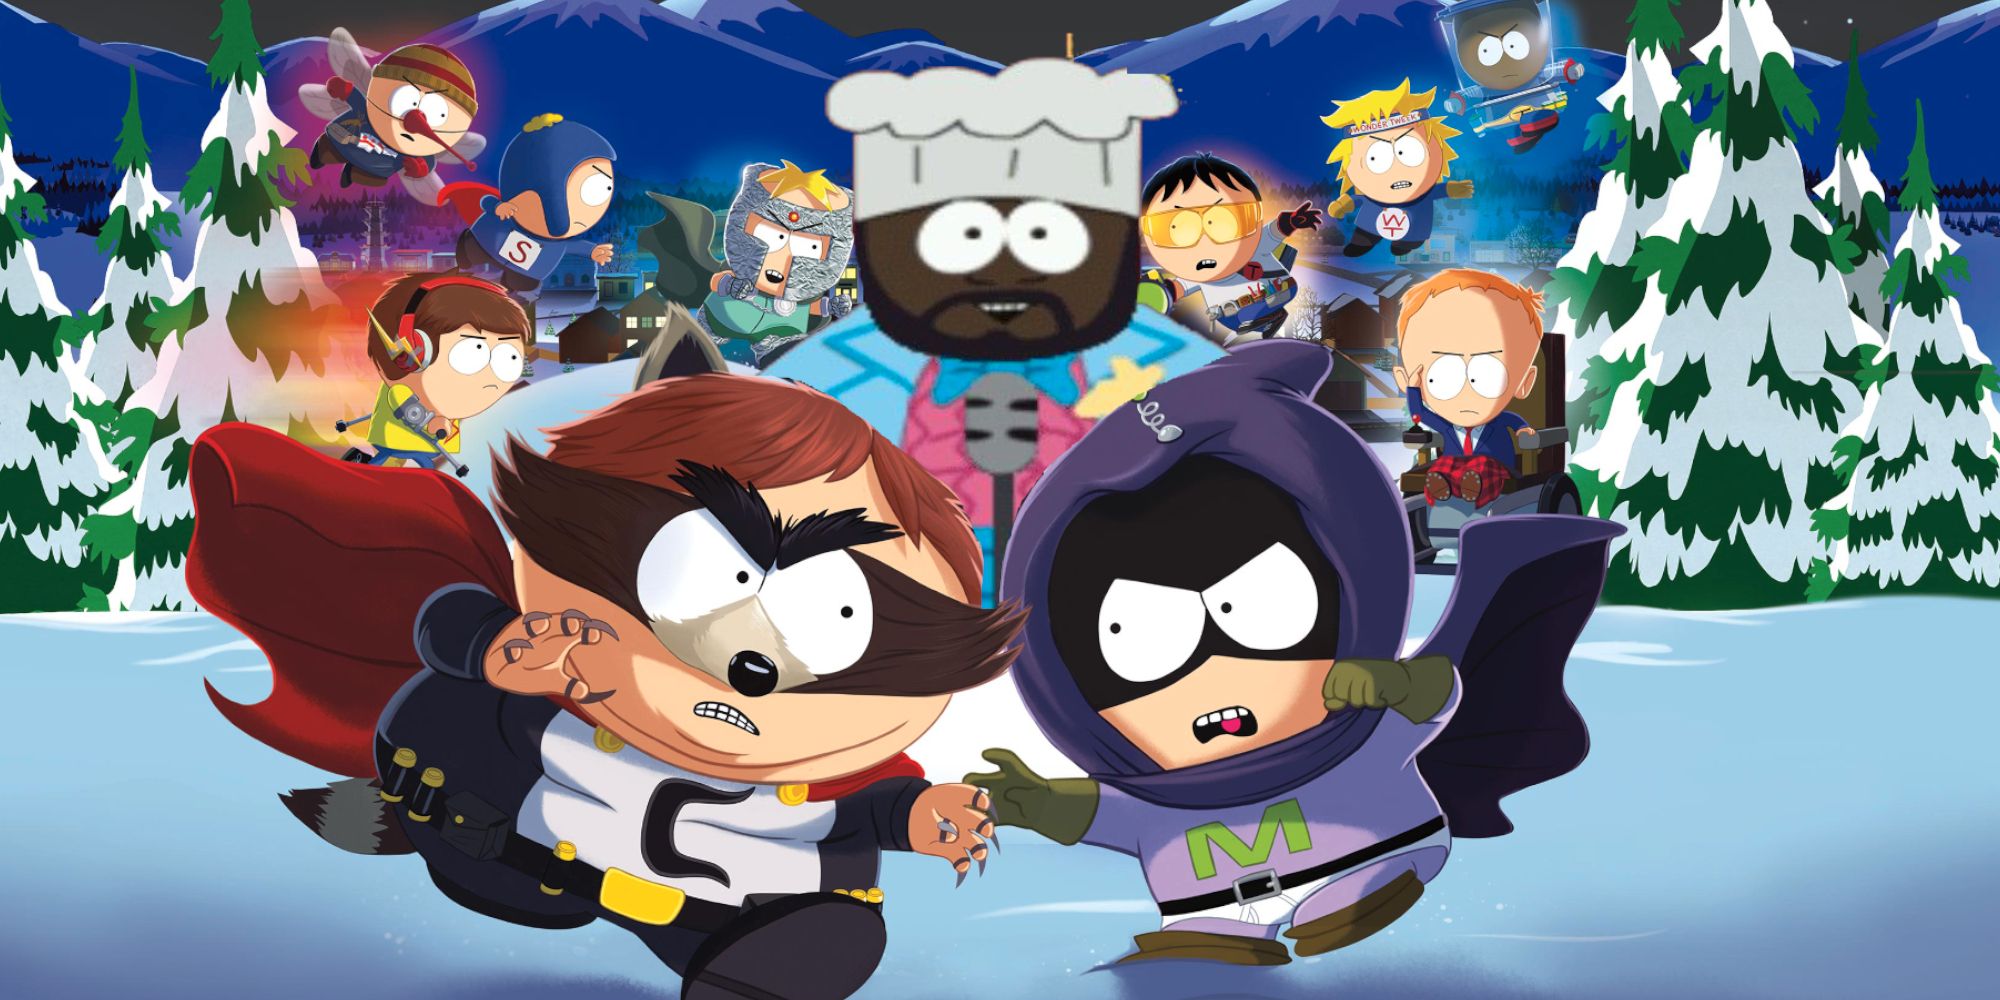 El nuevo juego de South Park debería ser una secuela de Chef's Luv Shack